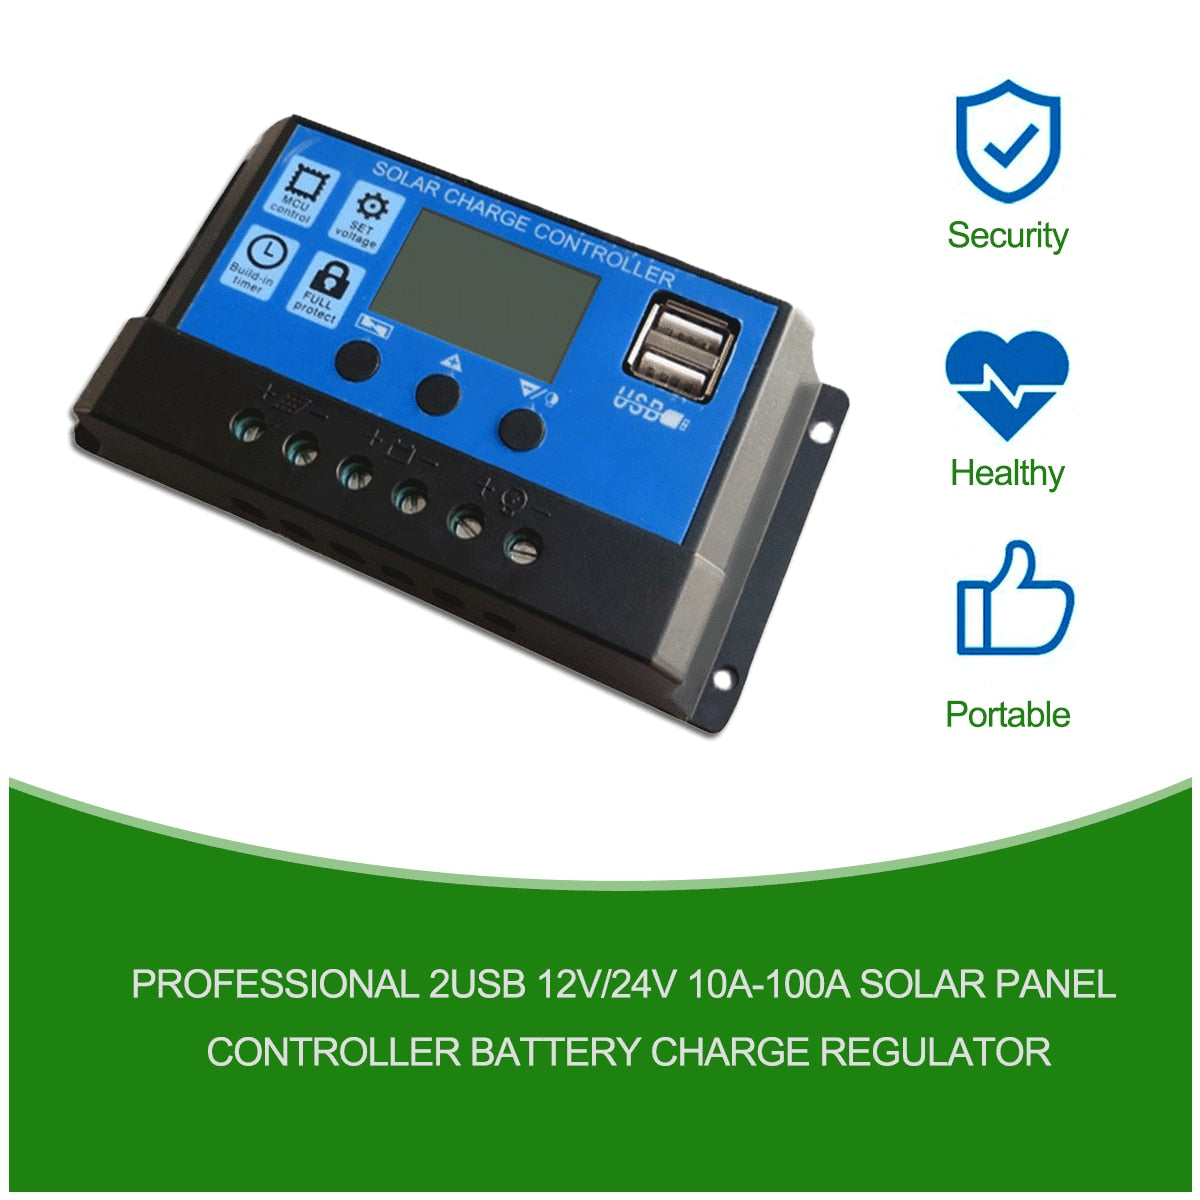 Régulateur de Charge de batterie de contrôleur de panneau solaire professionnel 2USB 12V/24V 10A ~ 100A système de contrôle de réverbère photovoltaïque